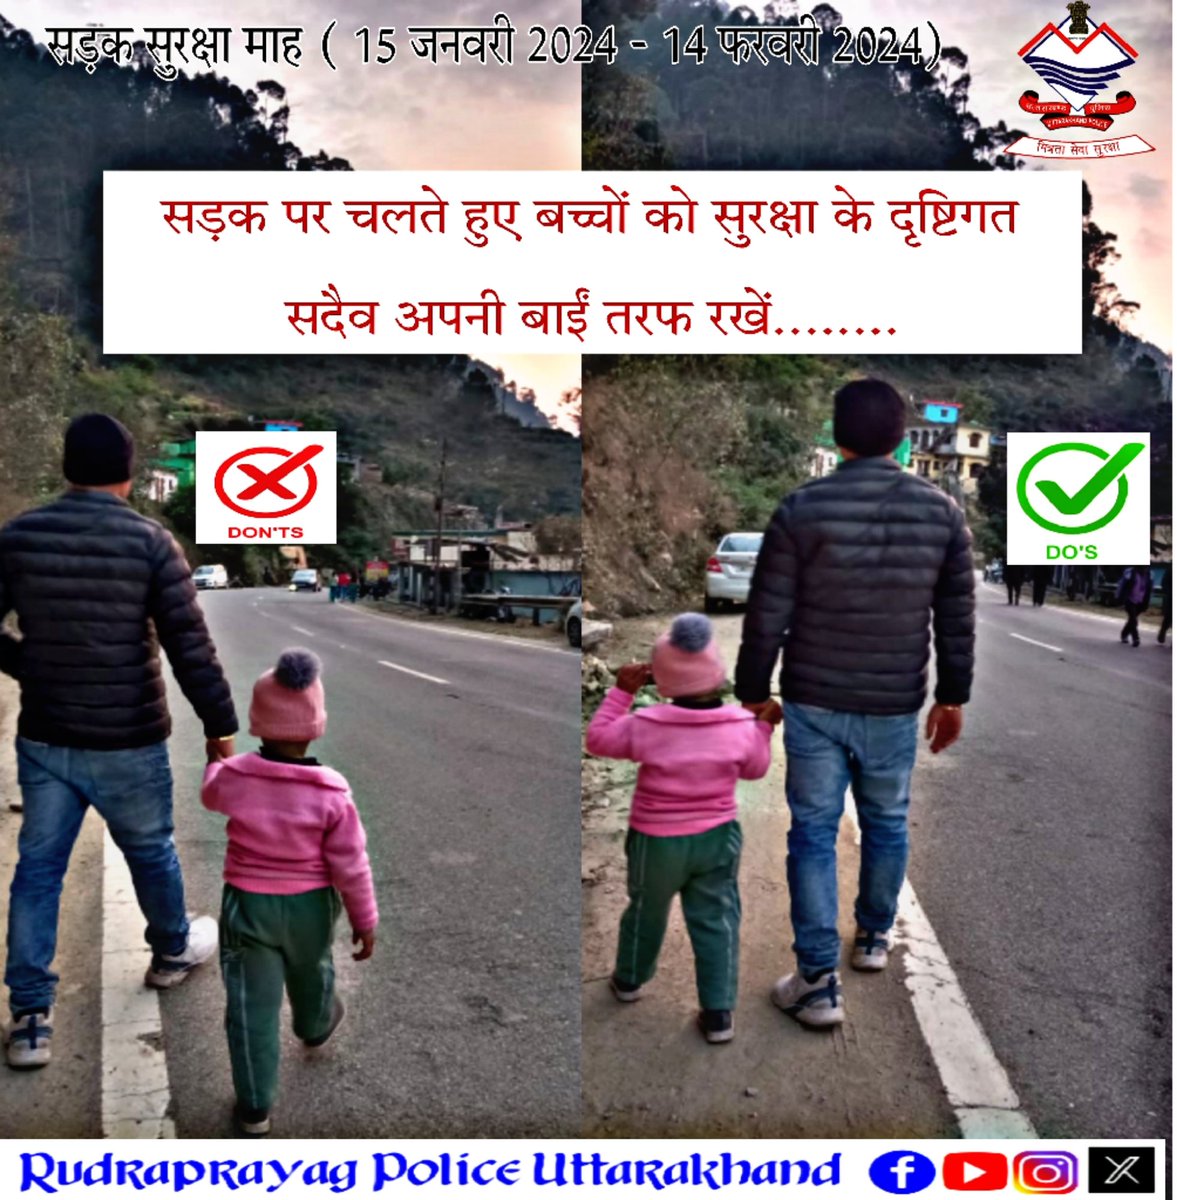 सड़क किनारे पैदल चलते हुए इस बात का ध्यान अवश्य रखें कि यदि आपके साथ छोटा बच्चा साथ हो तो उसे अपने बाईं तरफ रखकर चलें
#RoadSafetyMonth #WeCareForYou #FollowTrafficRules #roadsafetytips #RudraprayagPolice #UttarakhandPolice